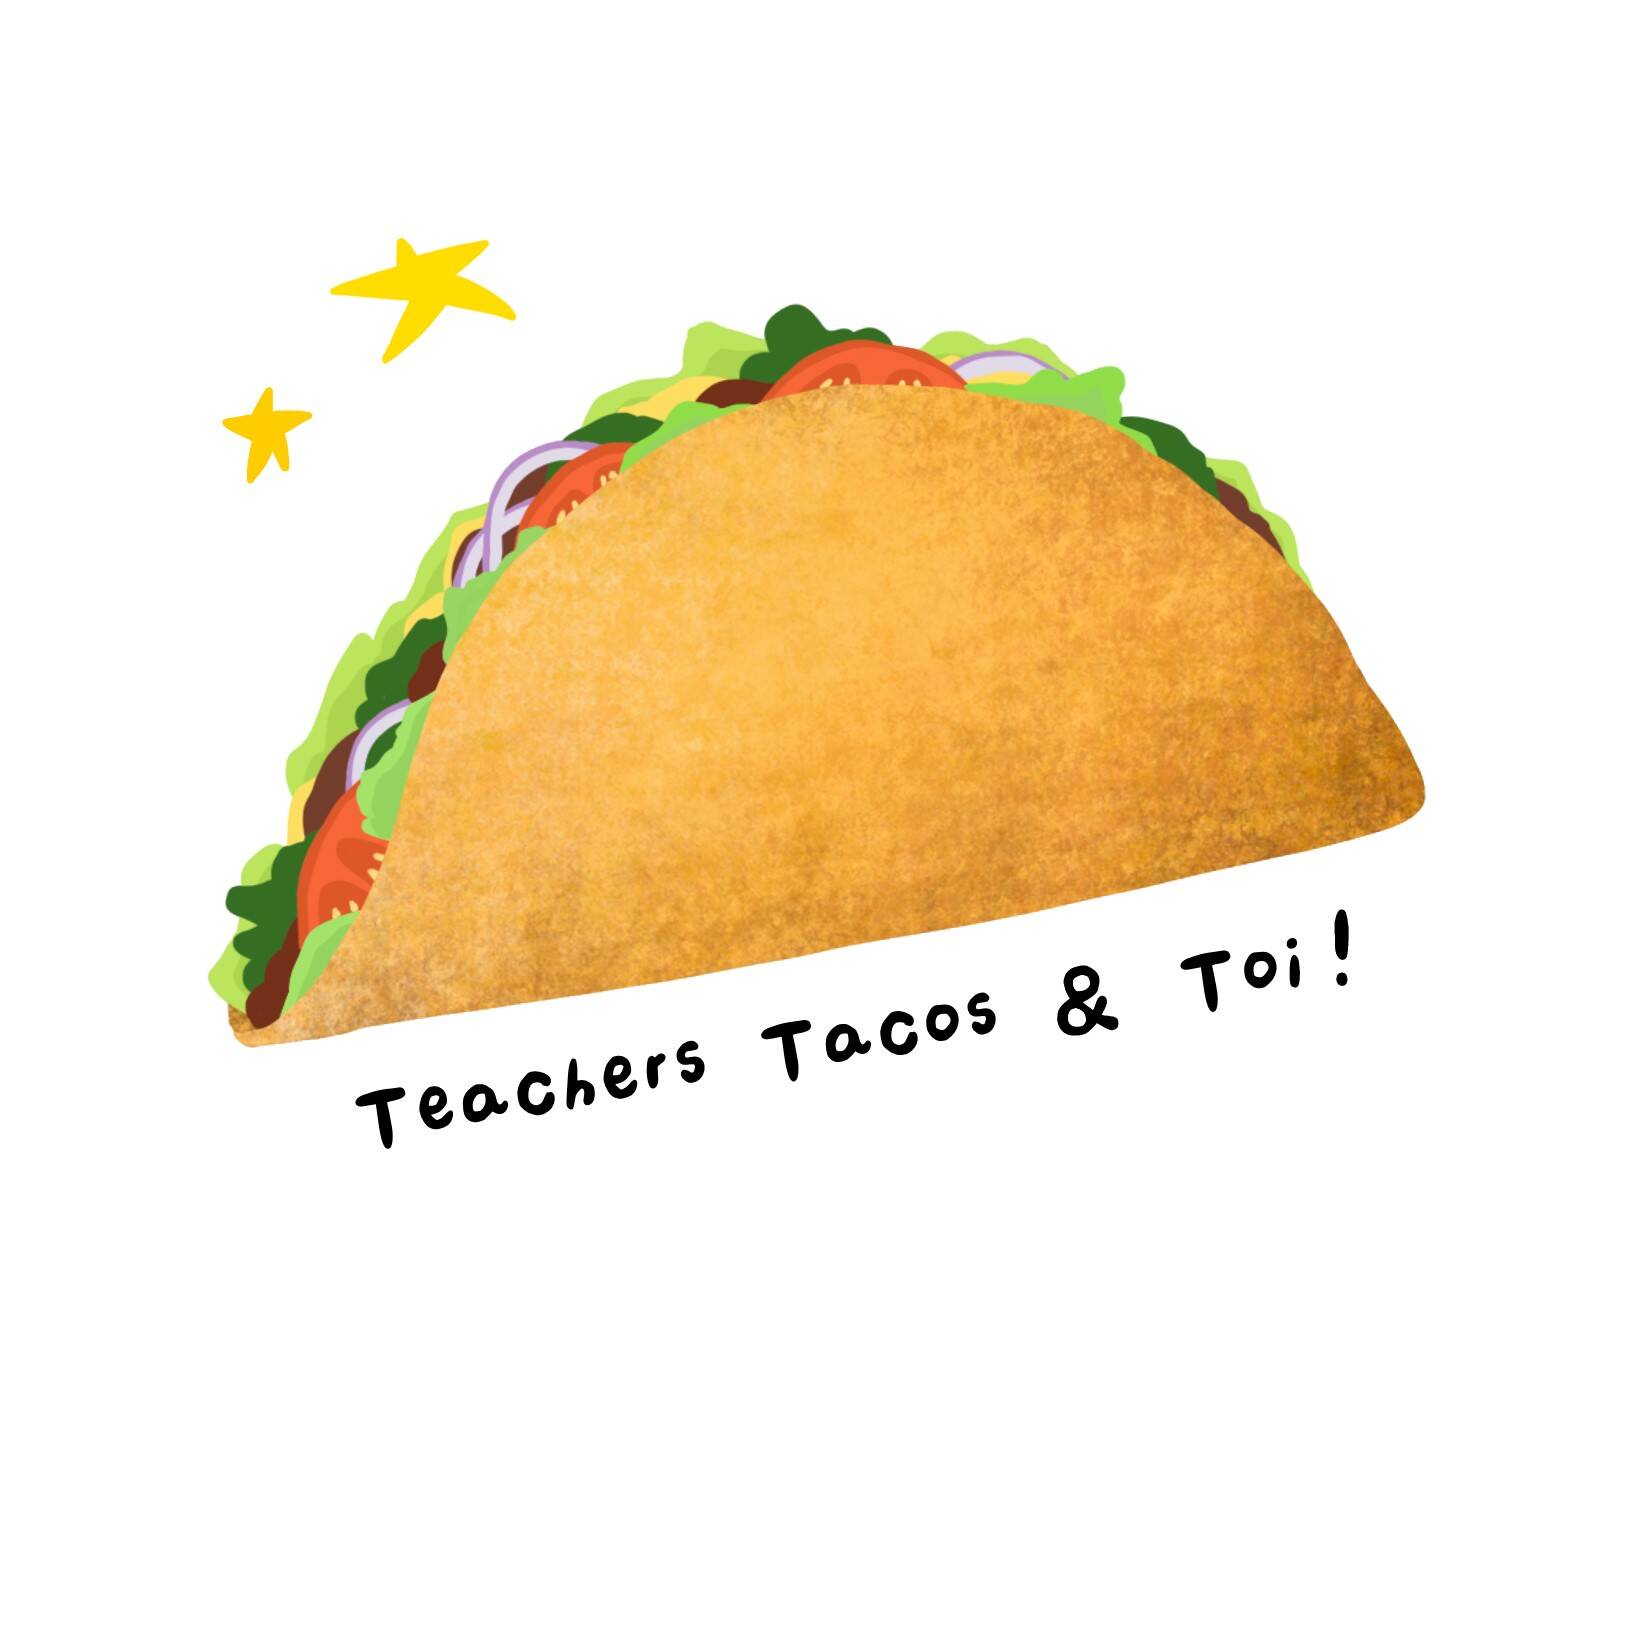 Teachers, Tacos & Toi